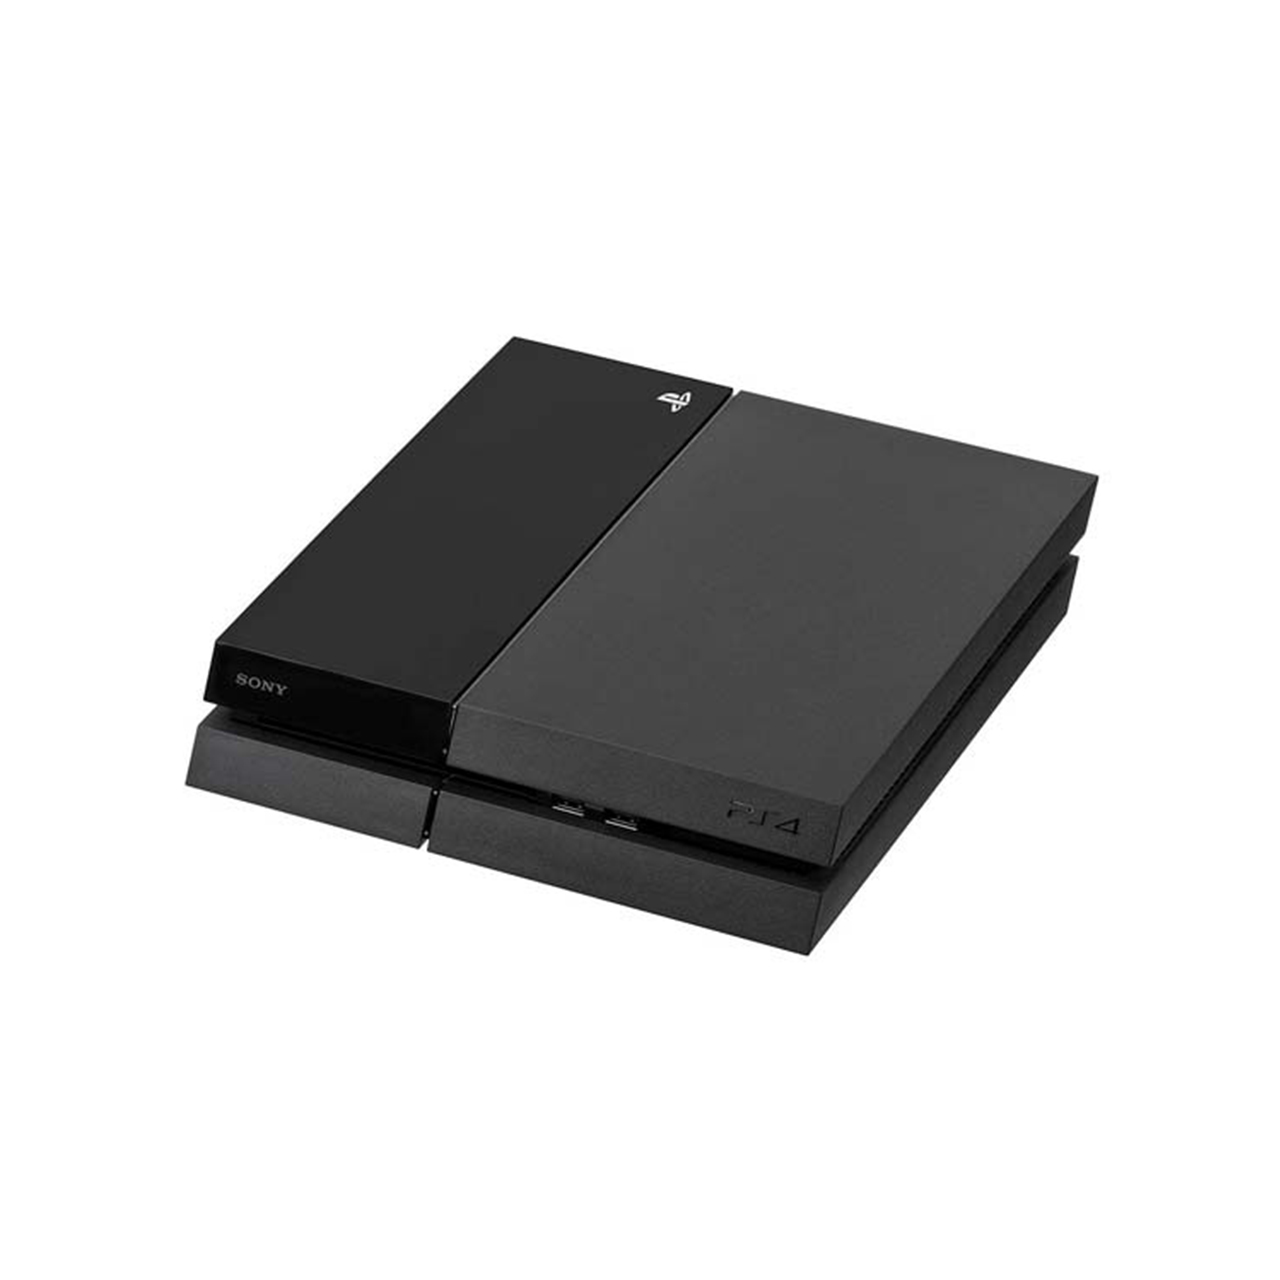 کنسول بازی سونی مدل Playstation 4 Fat ریجن 2, همراه بازی, کد 1335